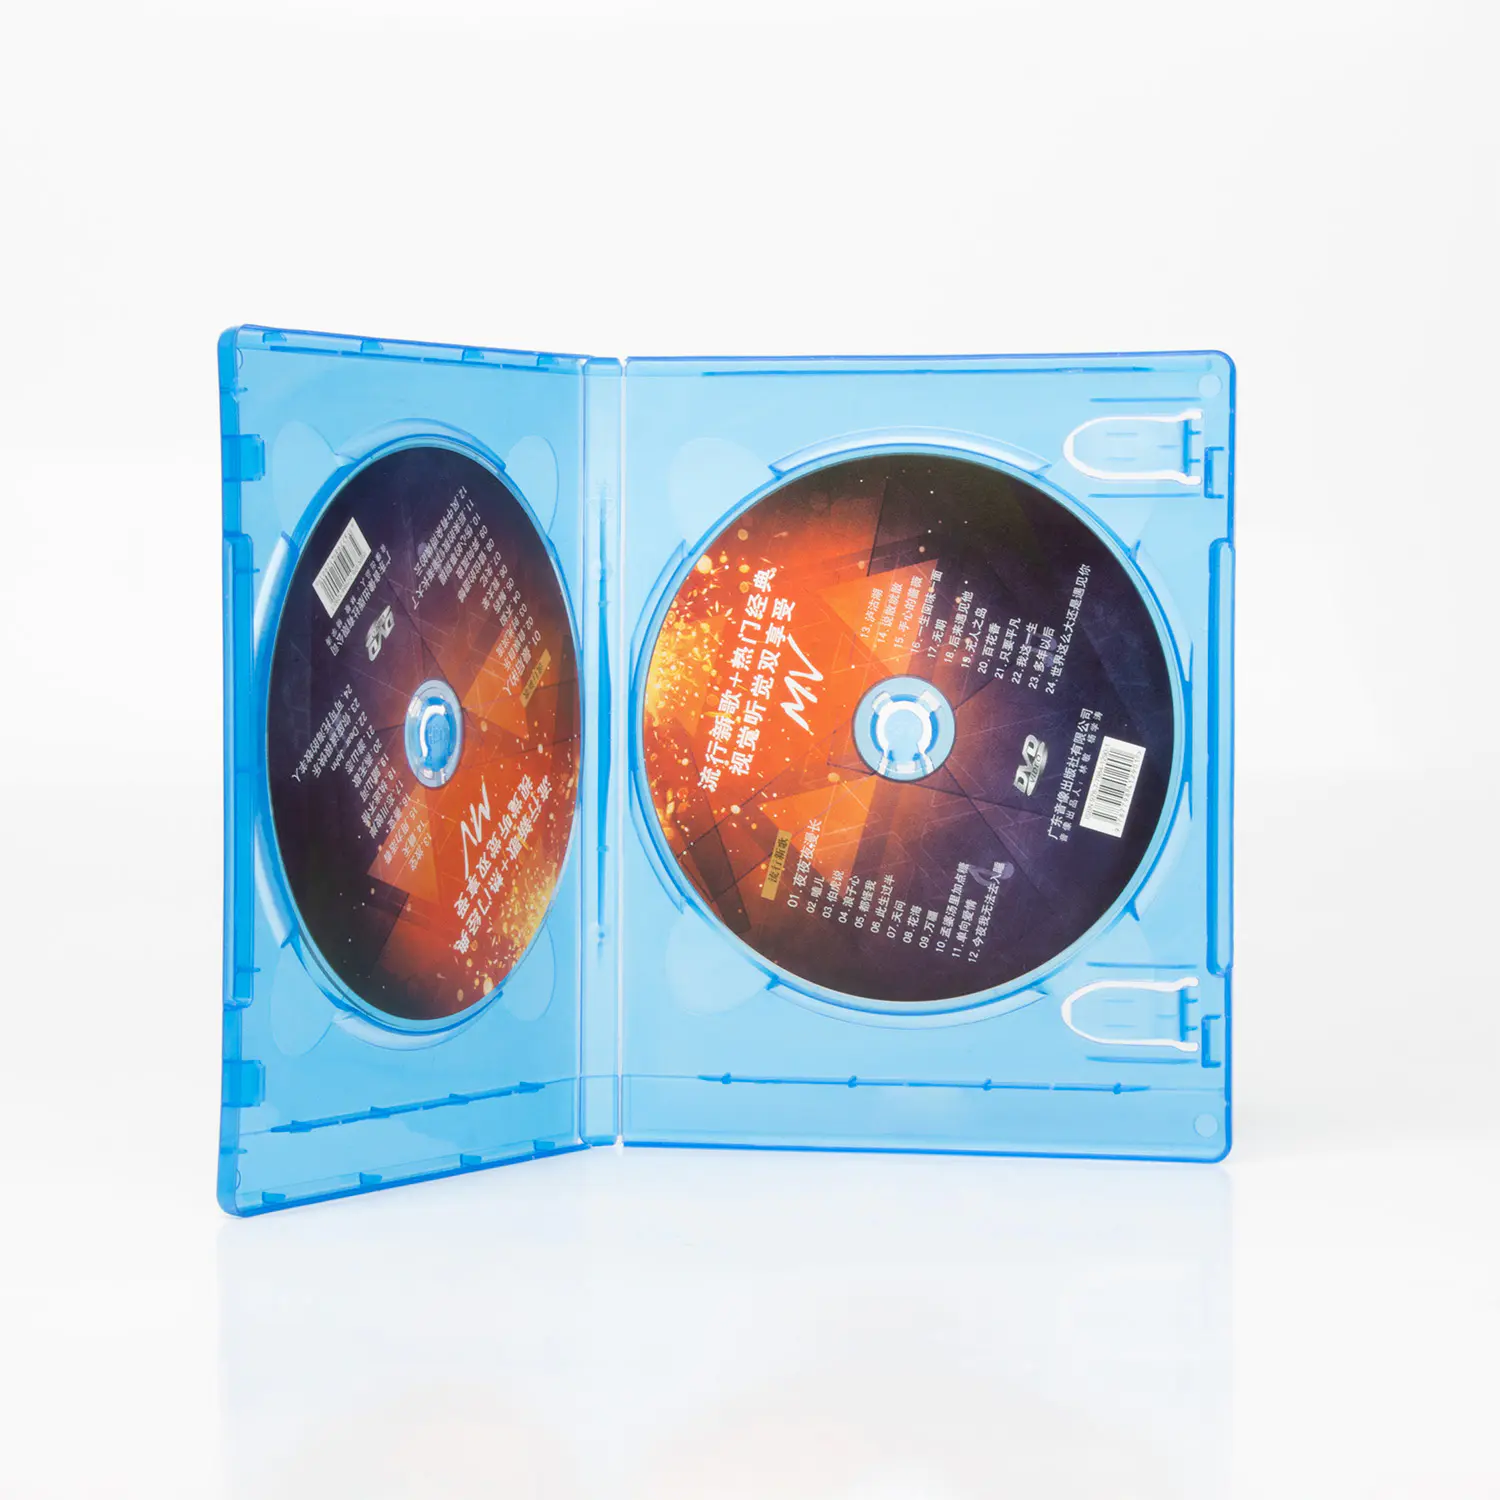 Double boîtier / boîtier de remplacement bleu standard vide pour les films sur disque Blu-ray